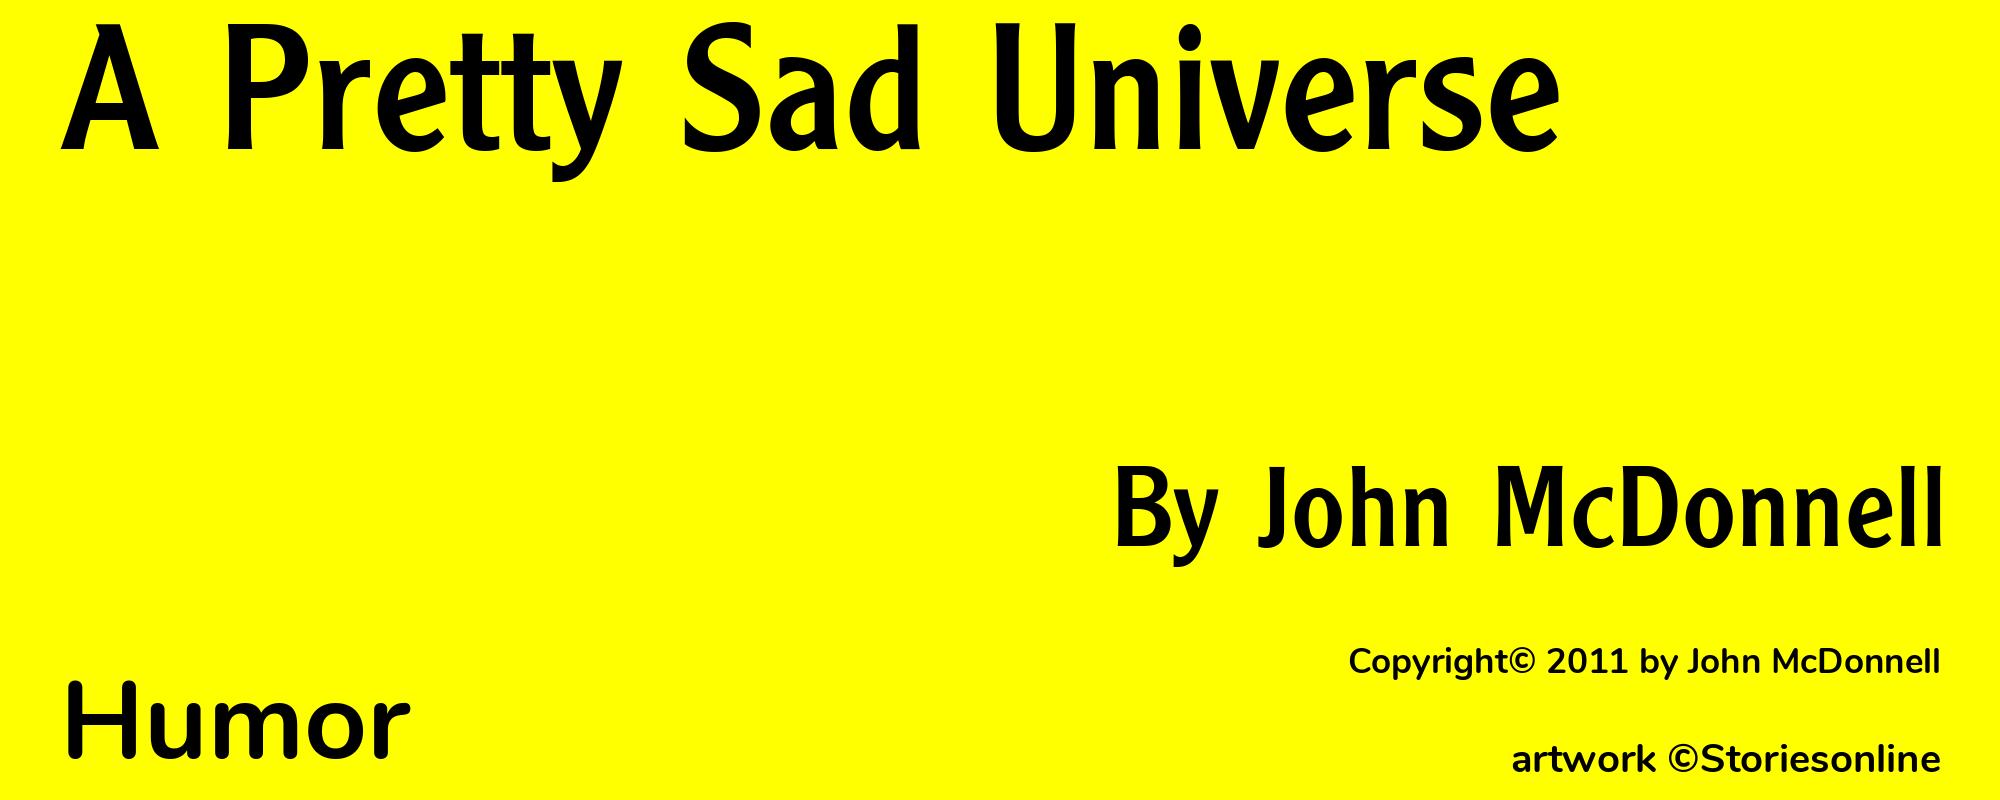 A Pretty Sad Universe - Cover